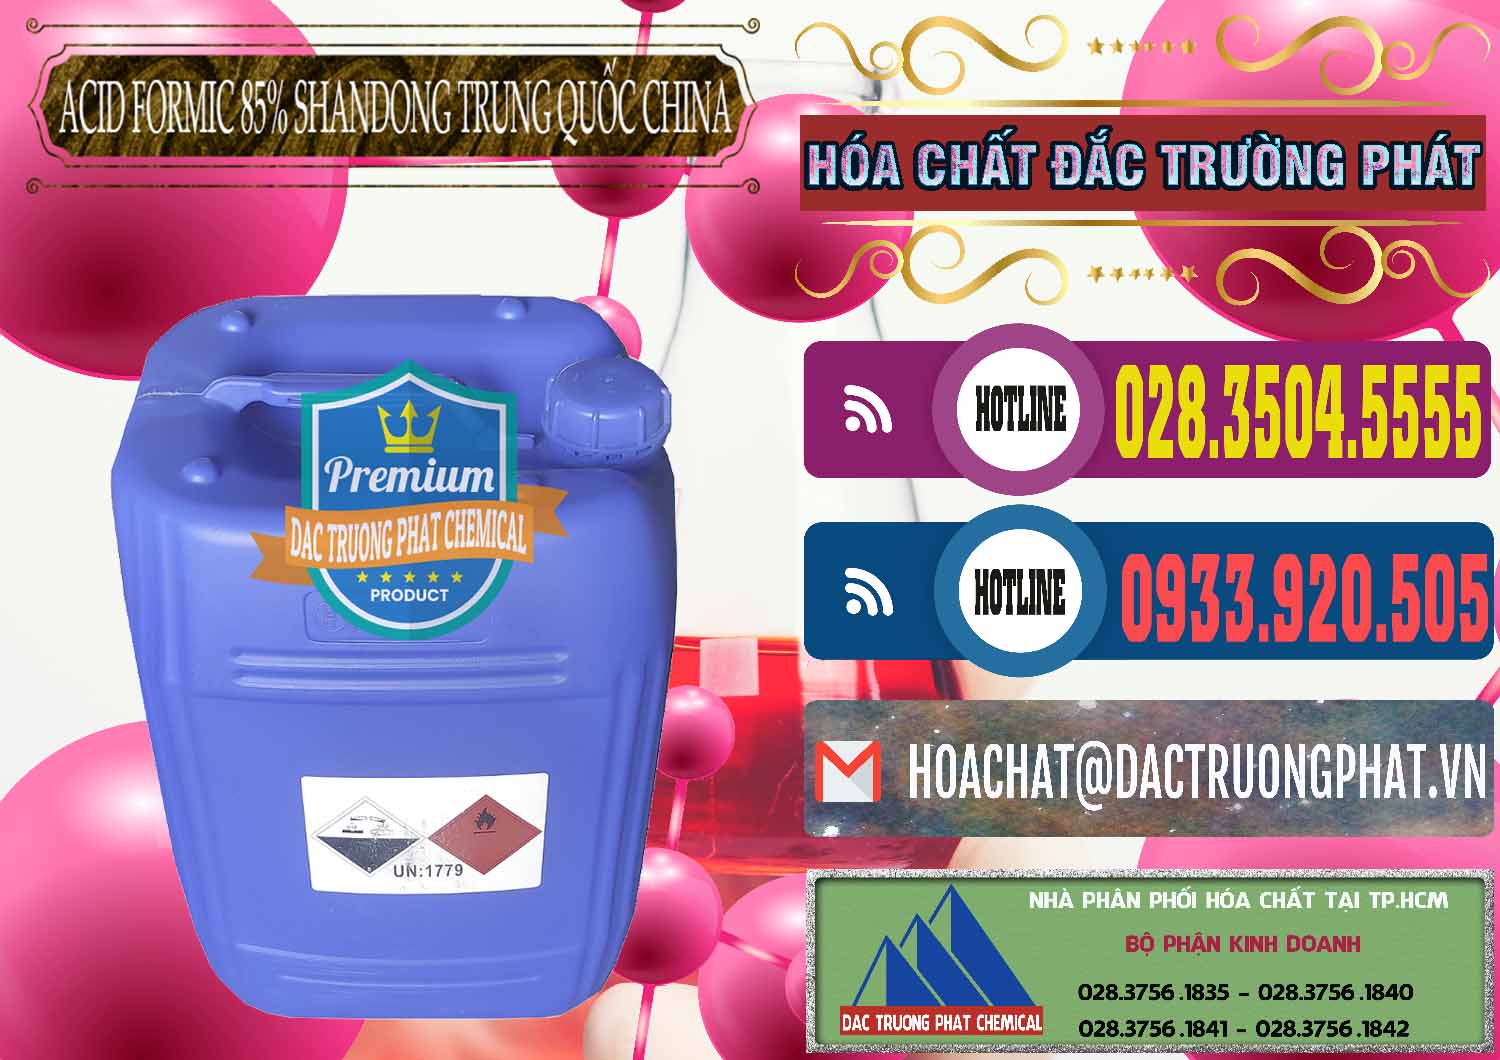 Chuyên kinh doanh & bán Acid Formic - Axit Formic 85% Shandong Trung Quốc China - 0235 - Cty chuyên cung cấp ( kinh doanh ) hóa chất tại TP.HCM - muabanhoachat.com.vn